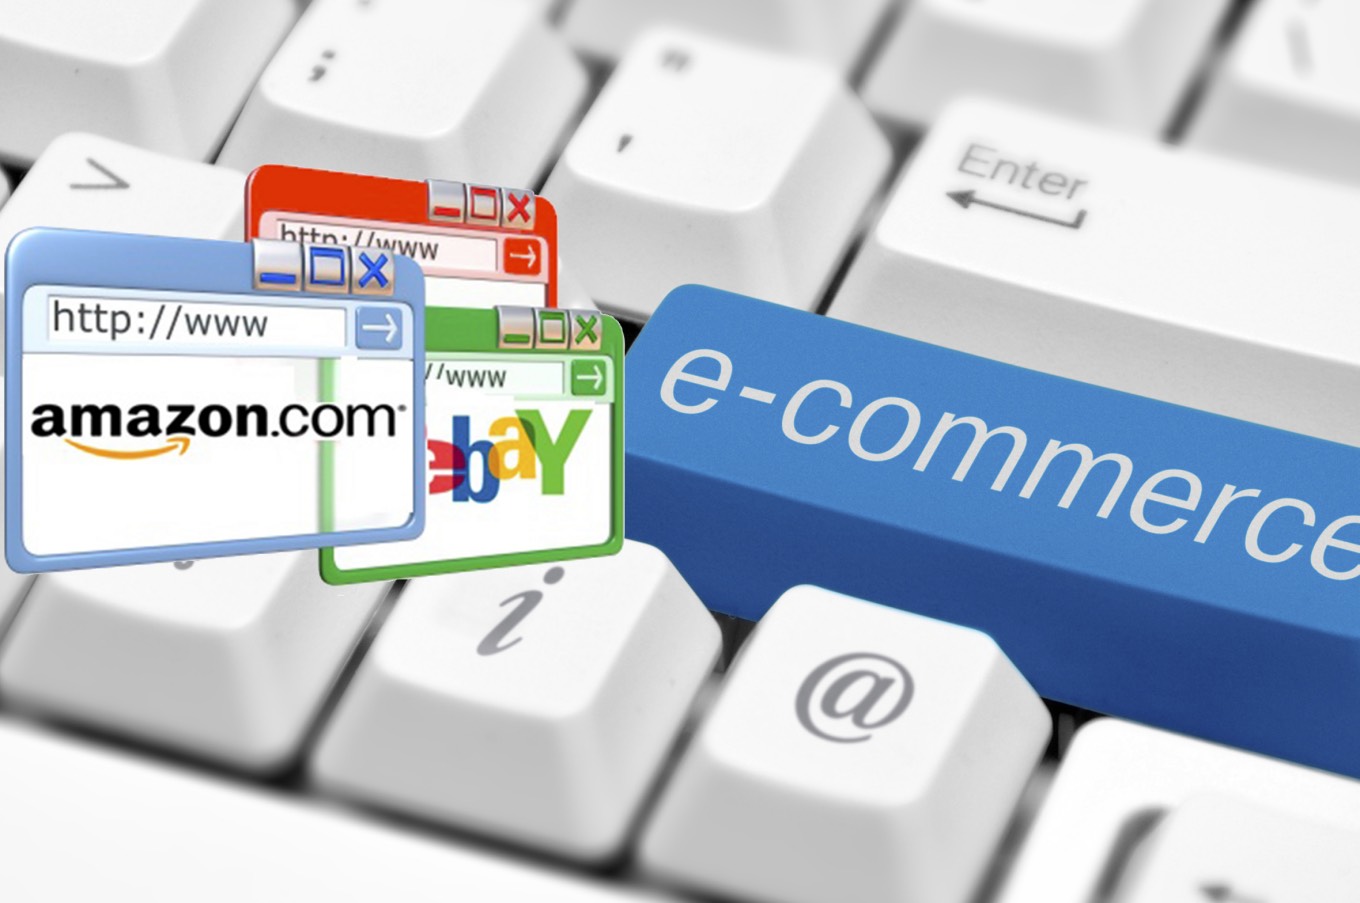 e-commerce key on a white keyboard closeup. E-commerce concept image.